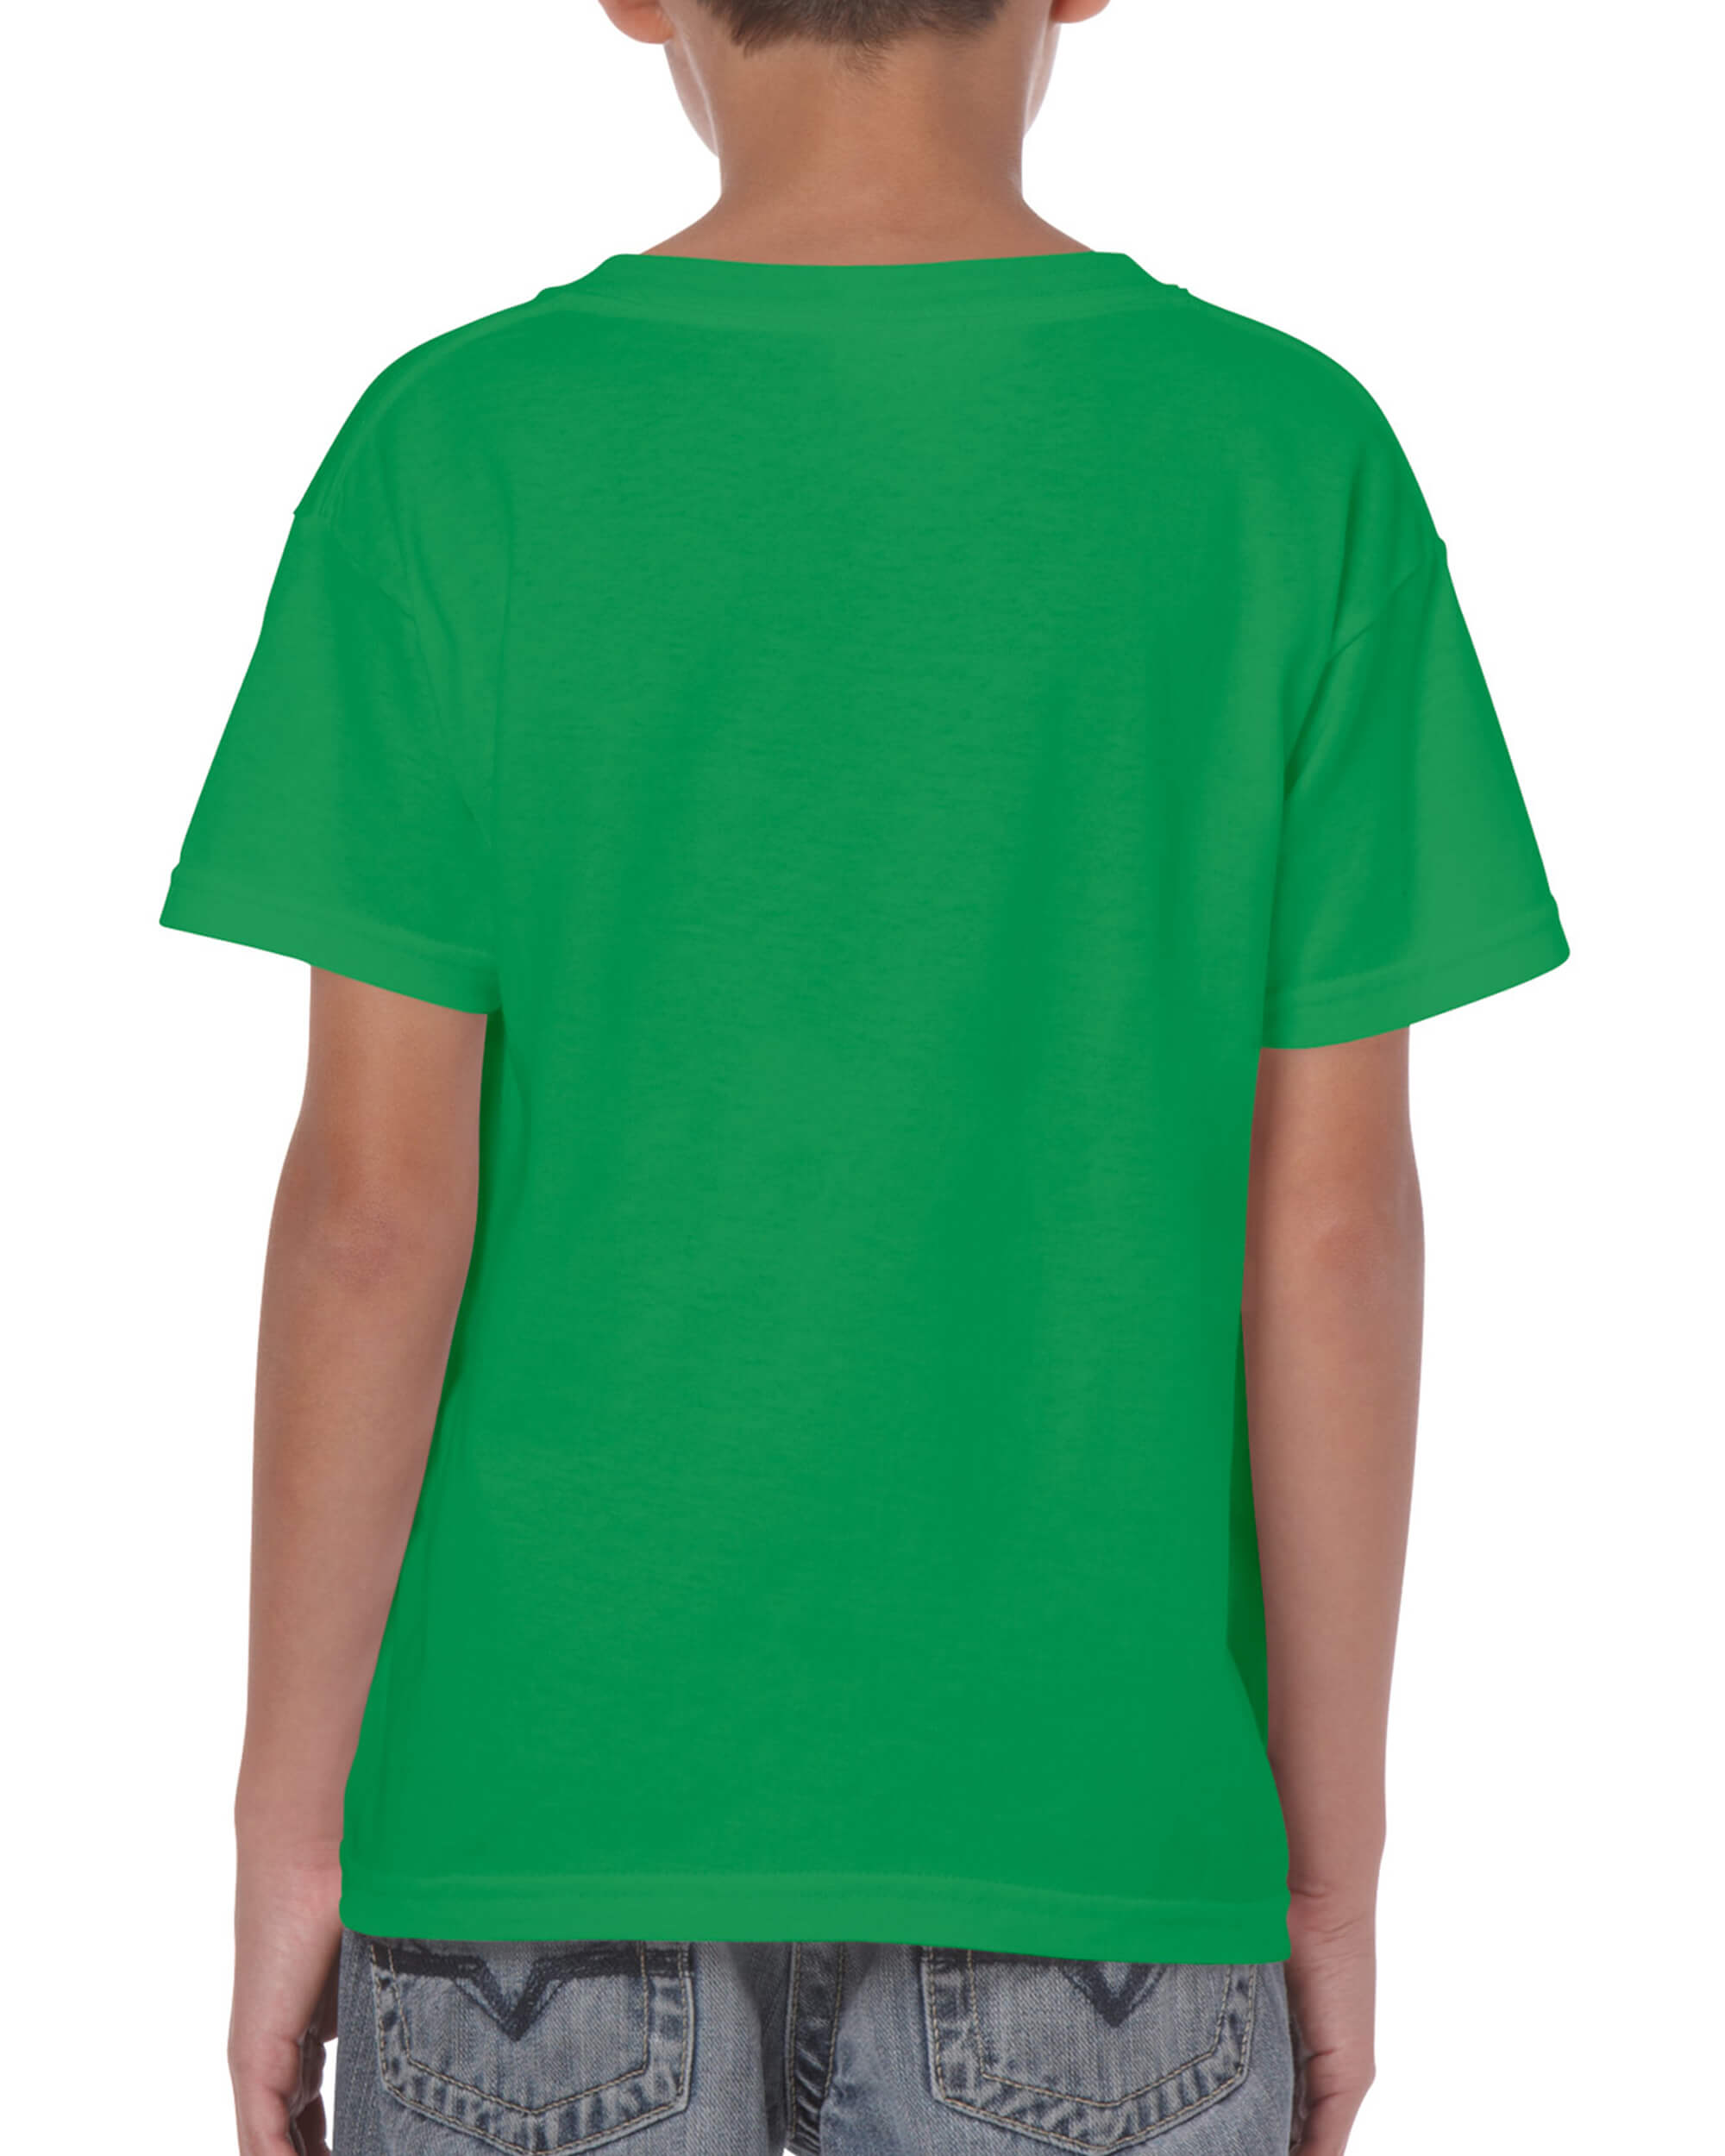 Kids Tshirt - Irish Green